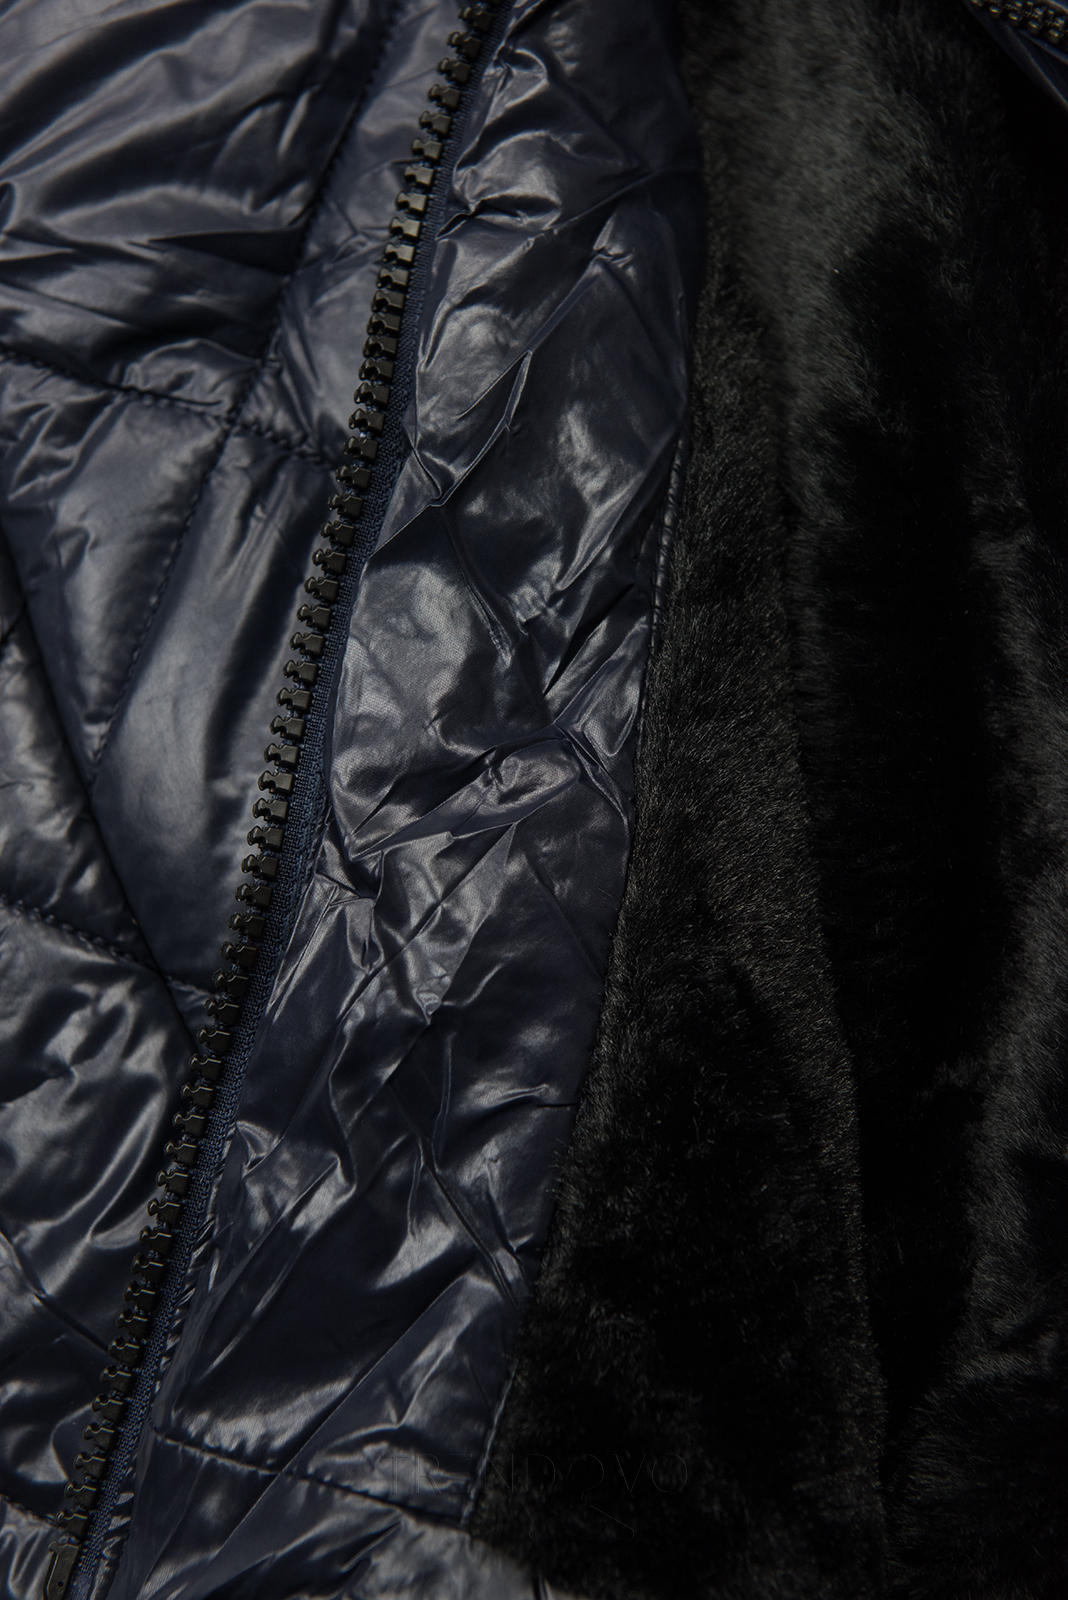 Tmavomodrá lesklá zimná bunda s opaskom